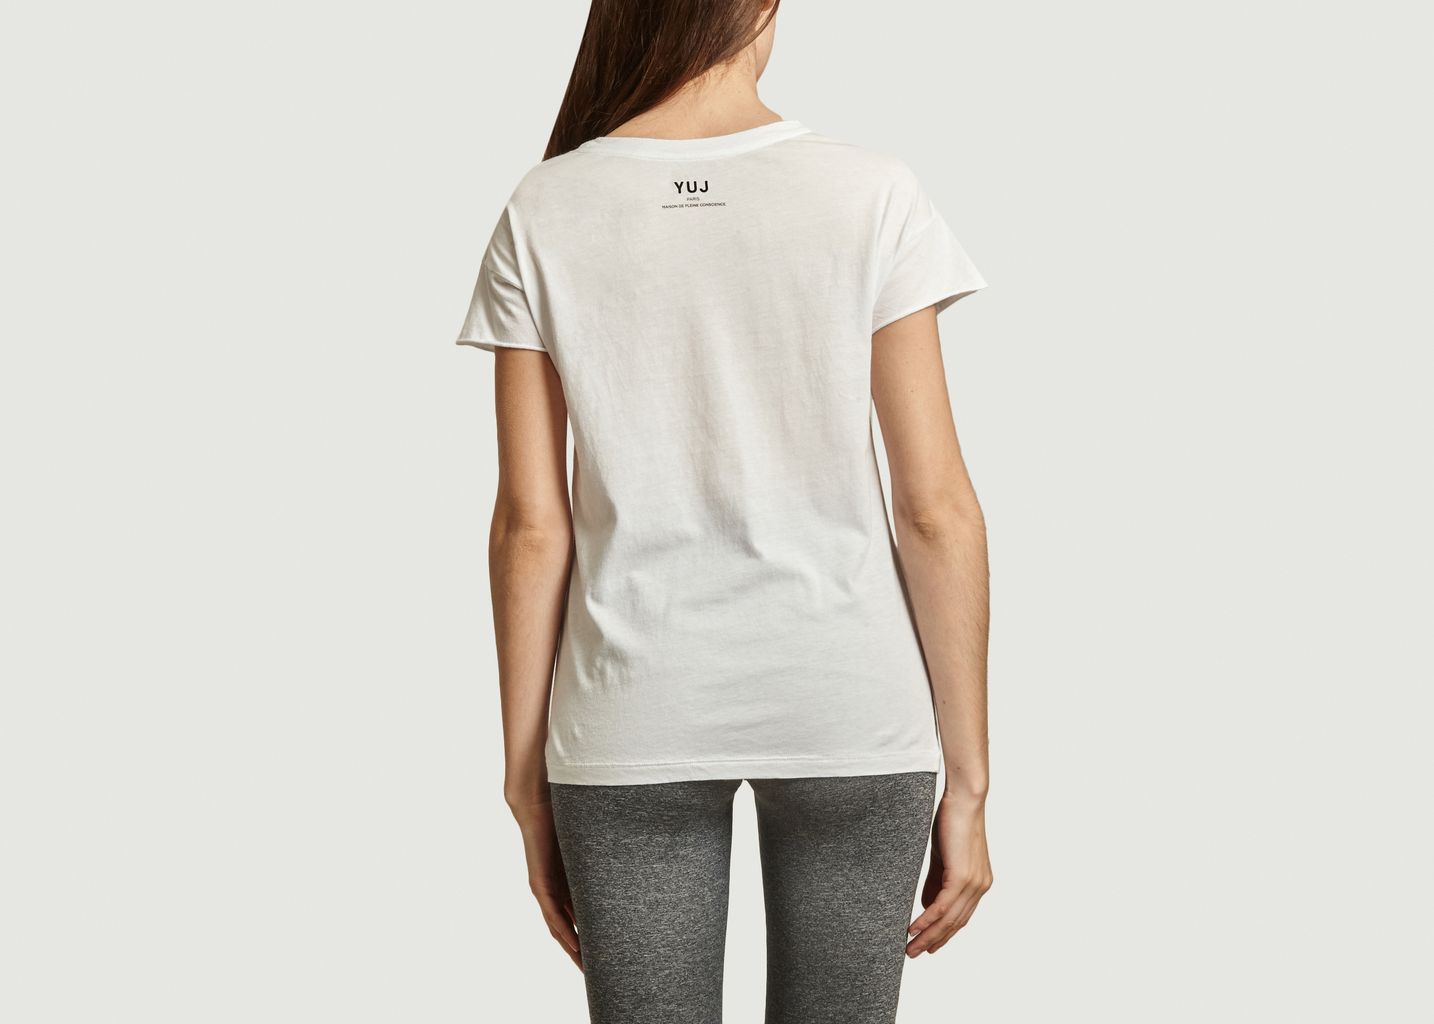 T-shirt Yoga will save the planet - YUJ Paris